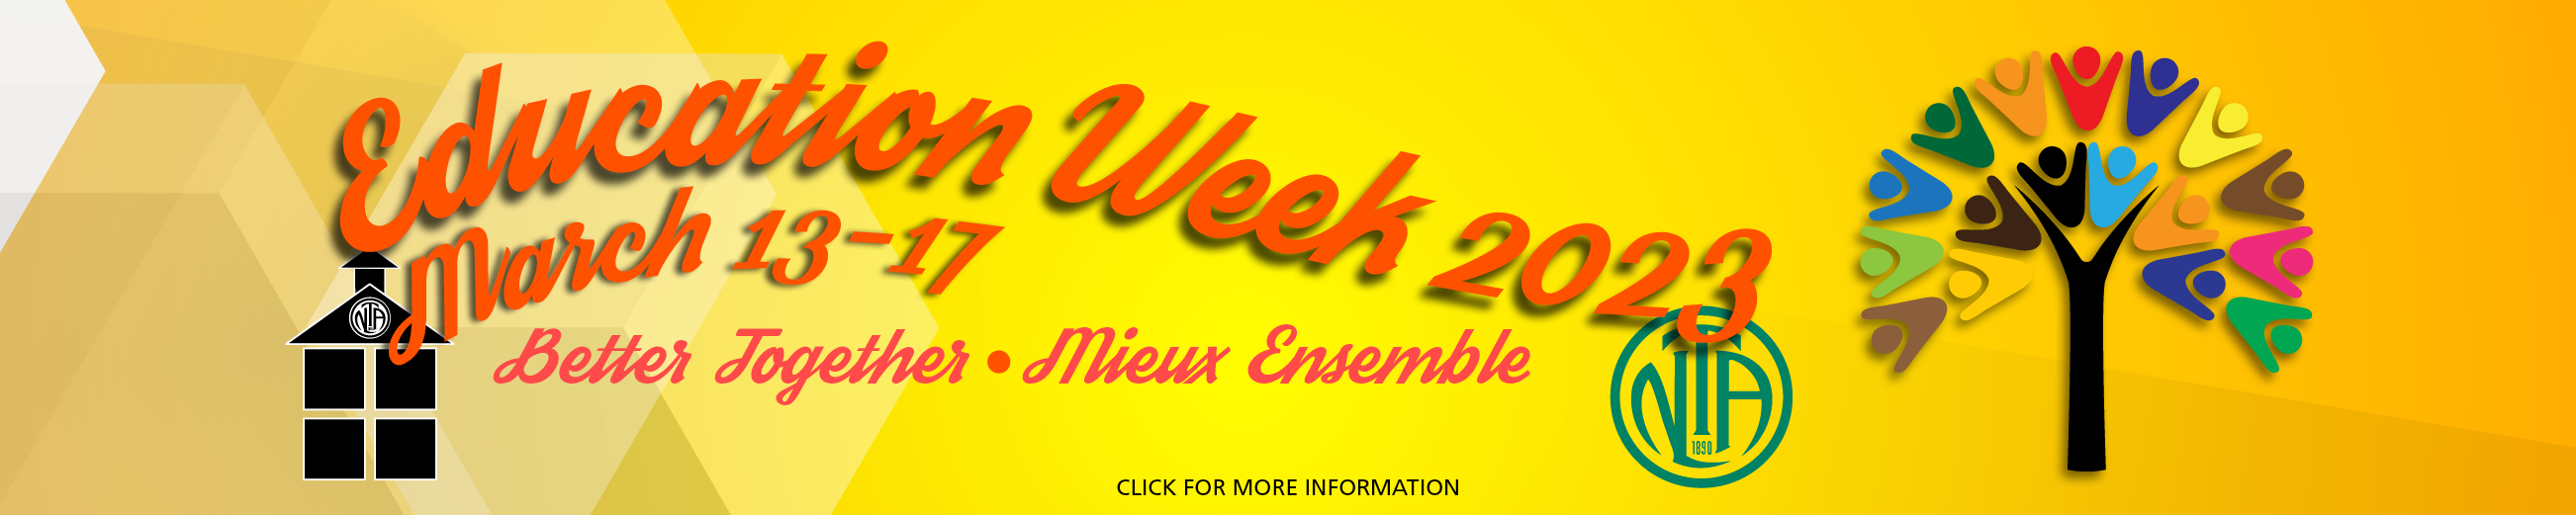 Education-Week-2023-web-Slider